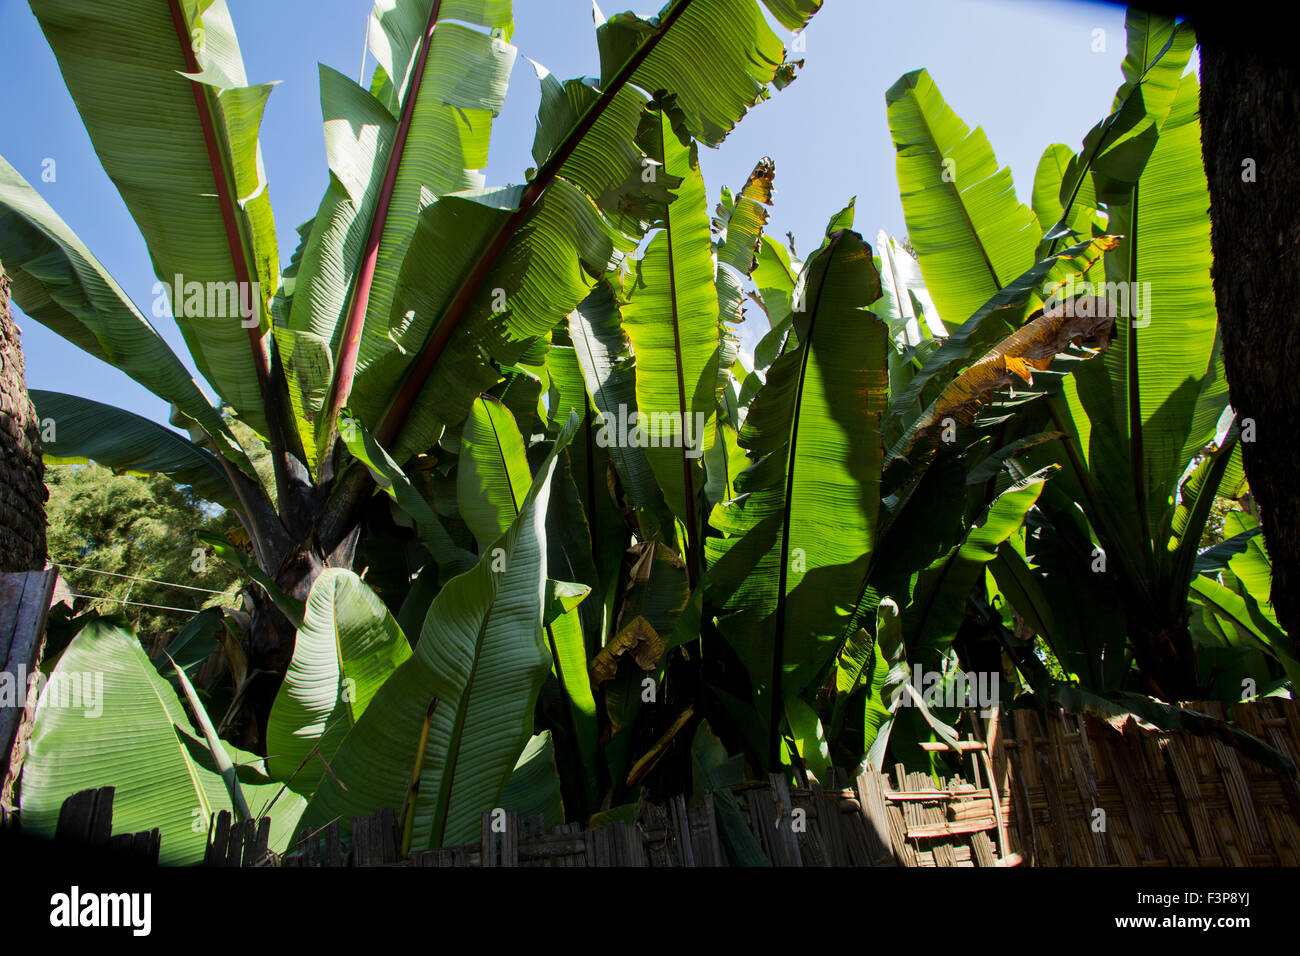 Africa, Etiopia, regione dell'Omo, Chencha, villaggio Dorze l'infruttuoso piante di banana. Queste foglie sono l' ingrediente principale in basso Foto Stock